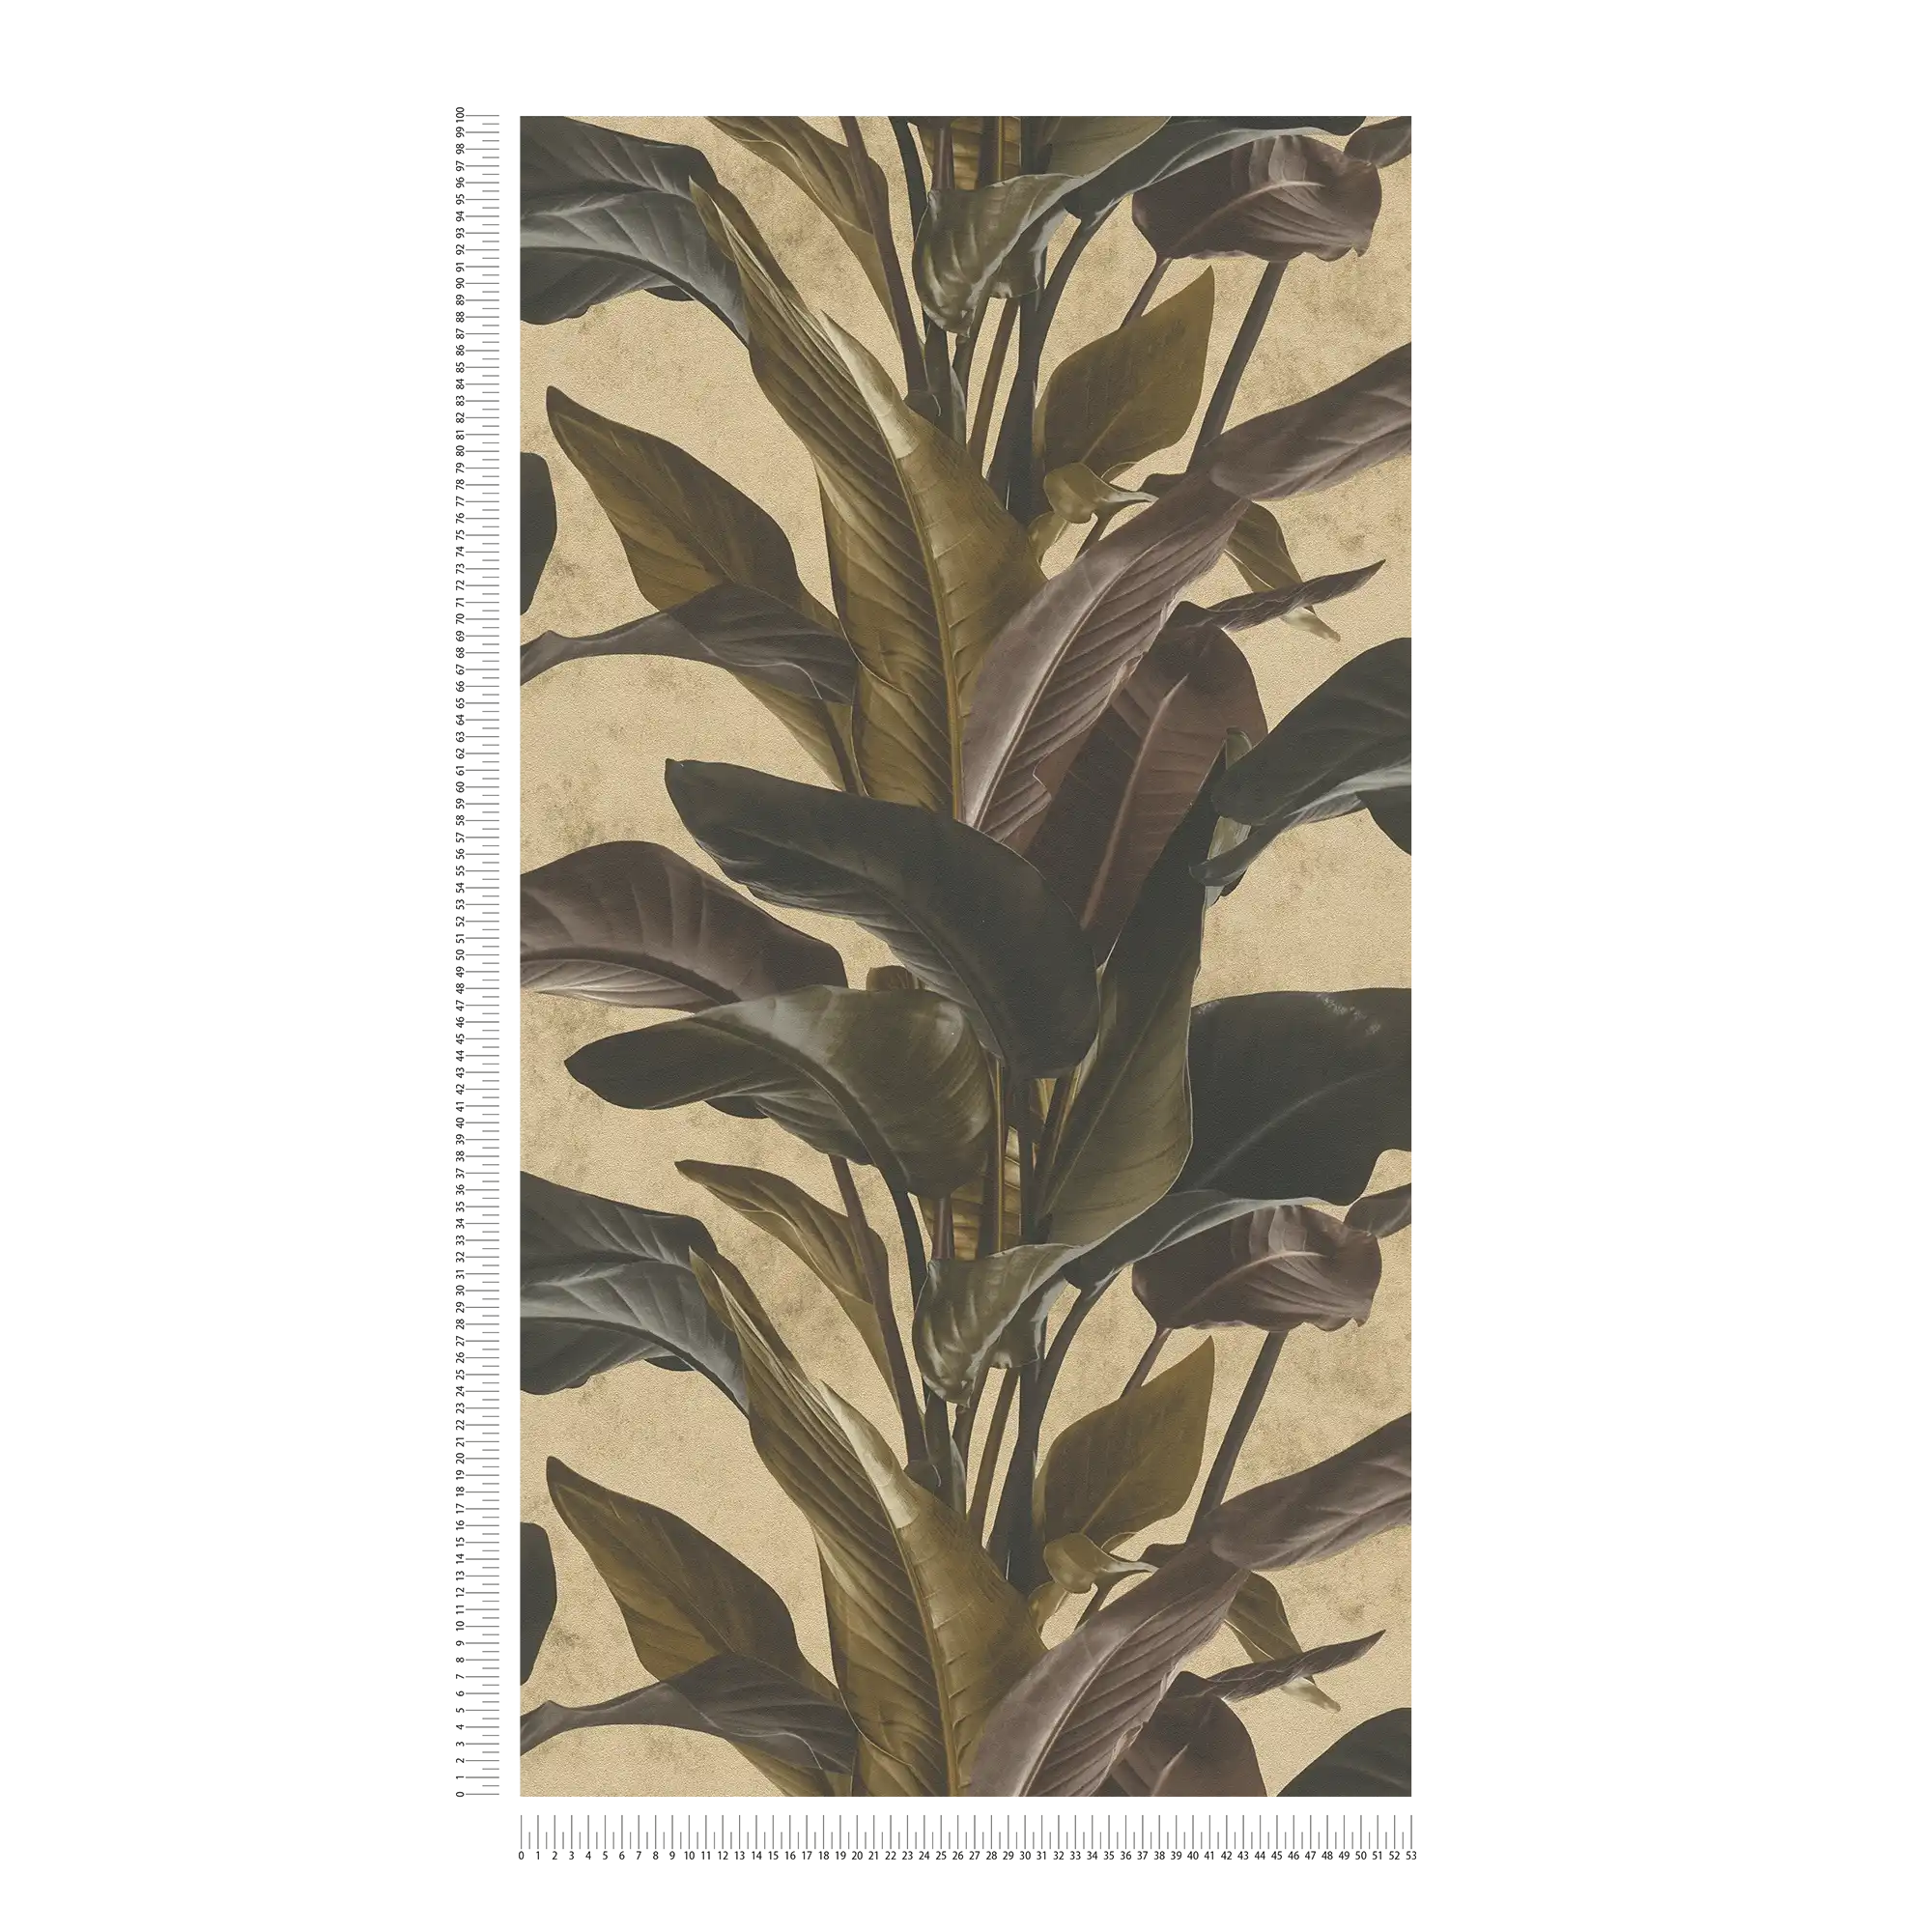             Wallpaper with natural design & metallic luster - brown, metallic, black
        